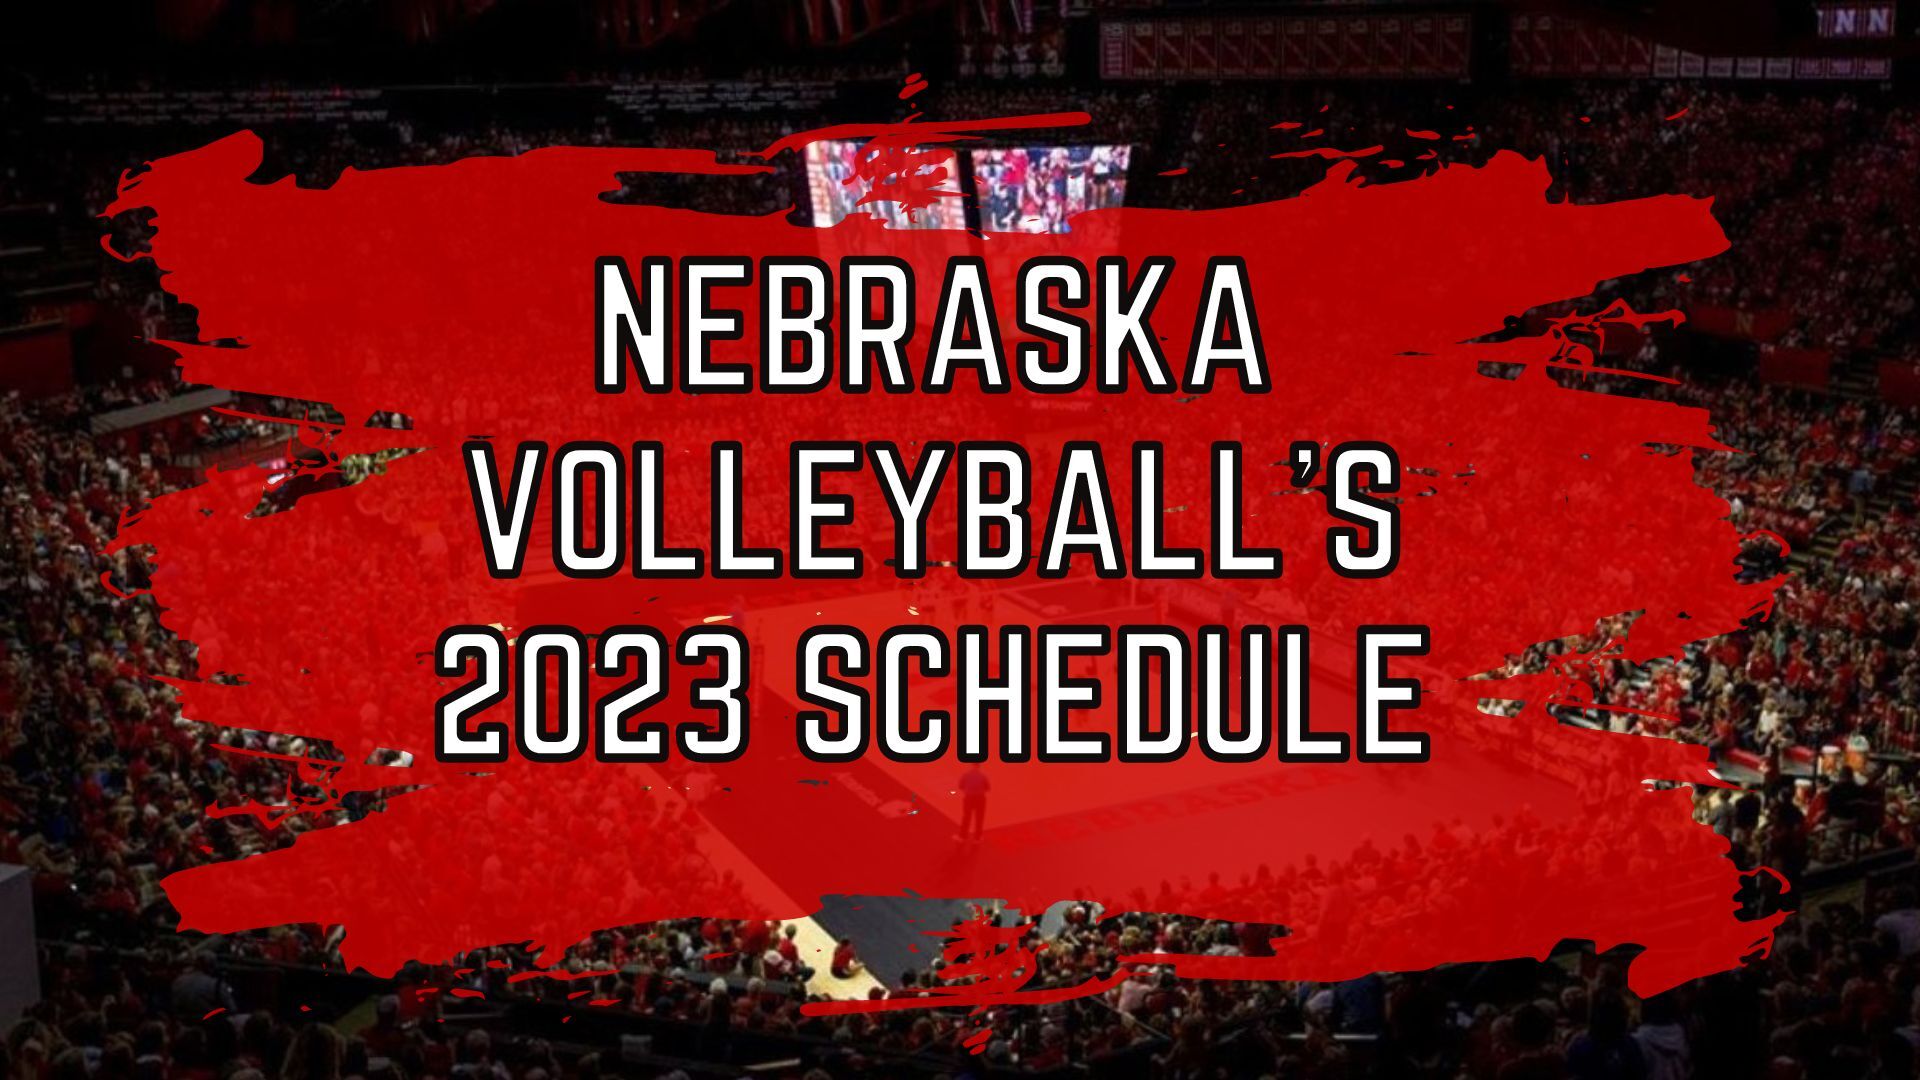 Nebraska volleyball 2023 schedule